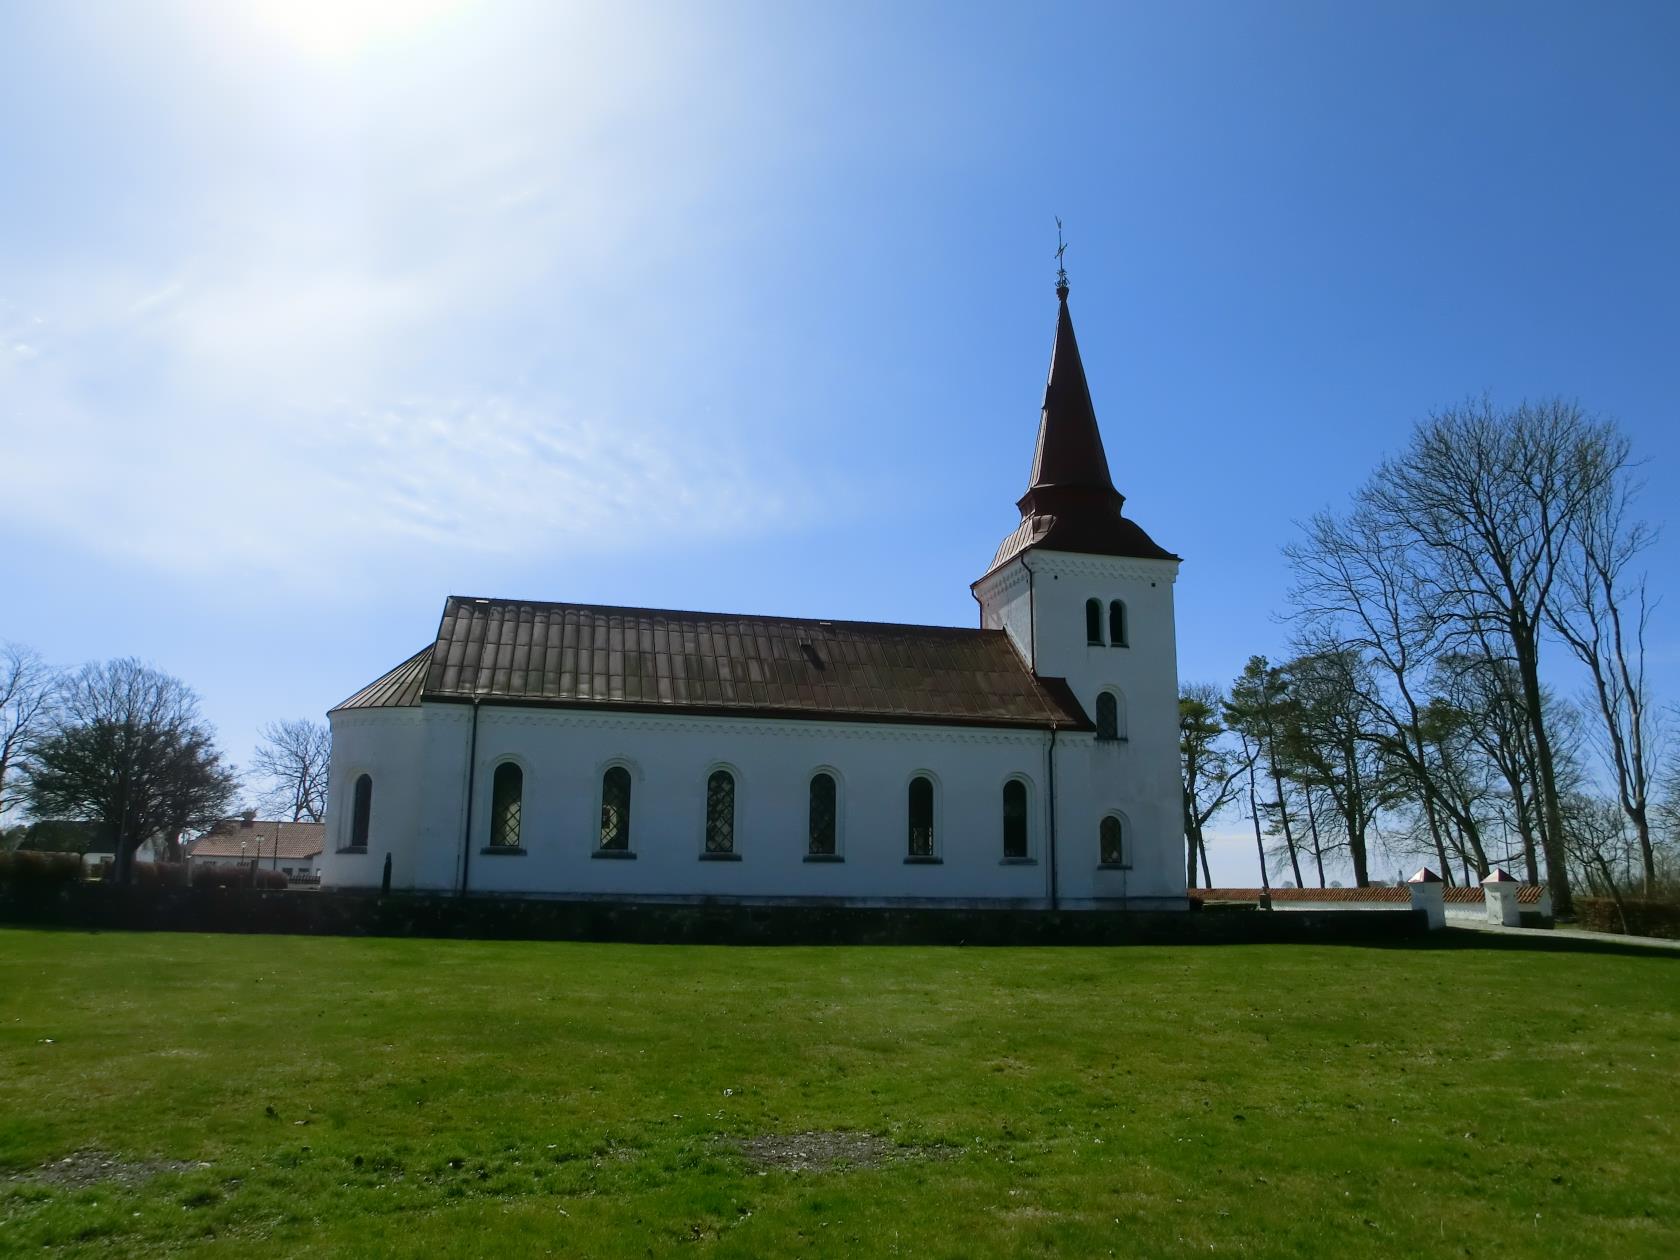 En vit kyrka med rött tegeltak och kyrktorn.